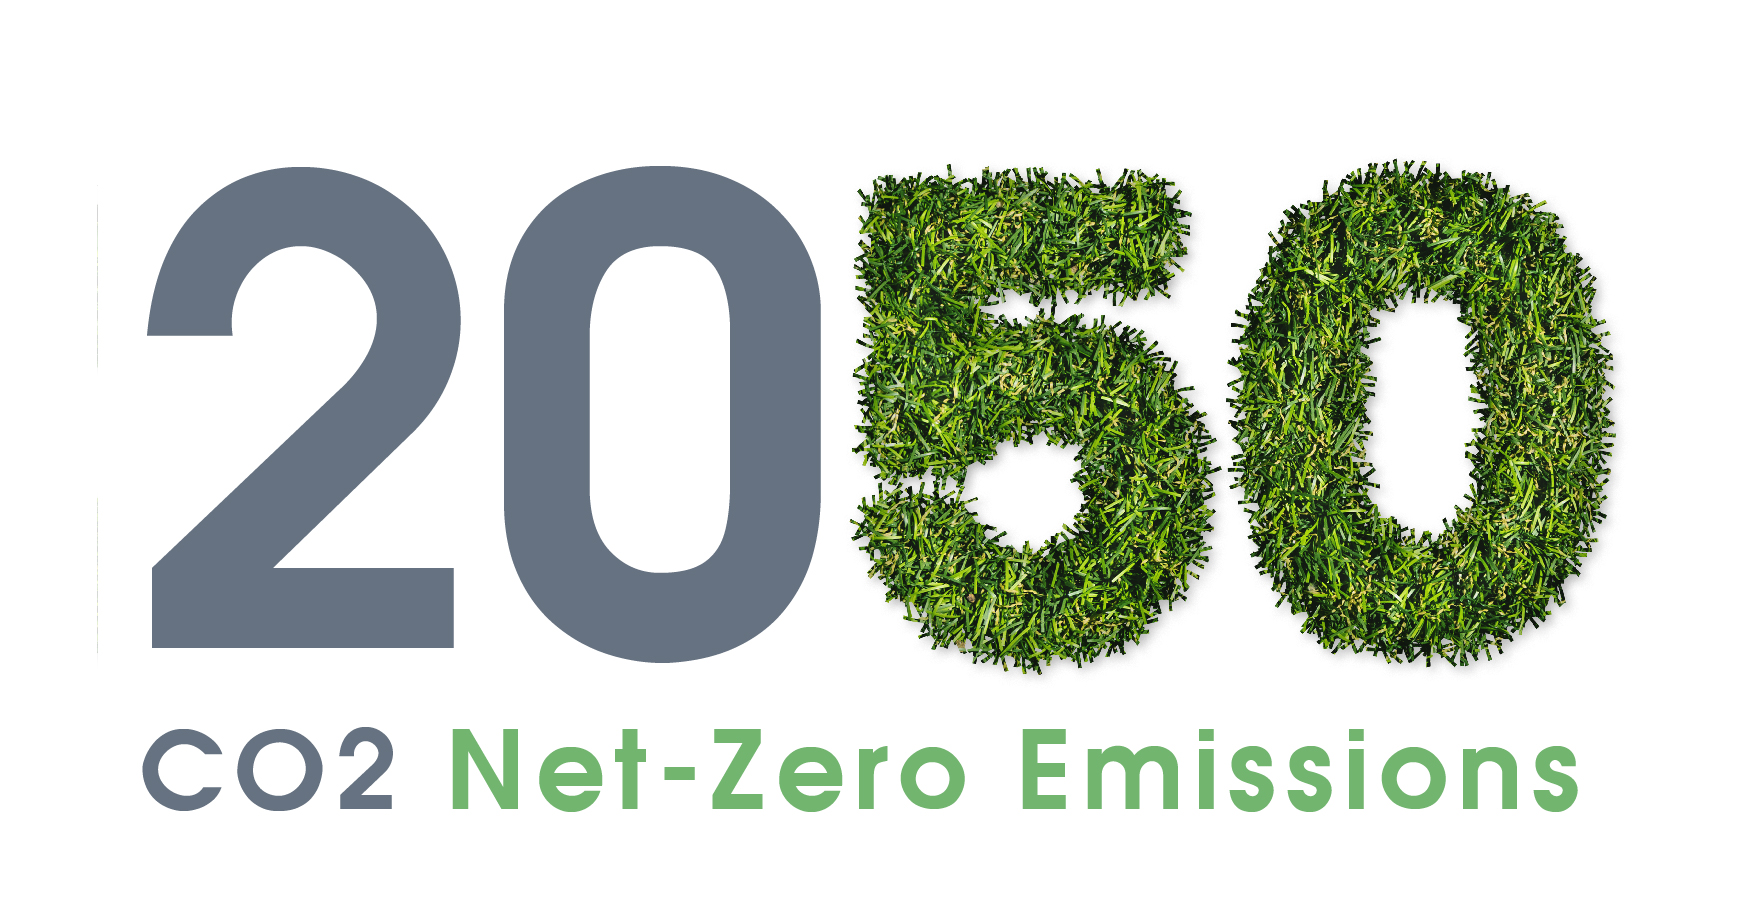 obiettivo neutralità carbonica 2050